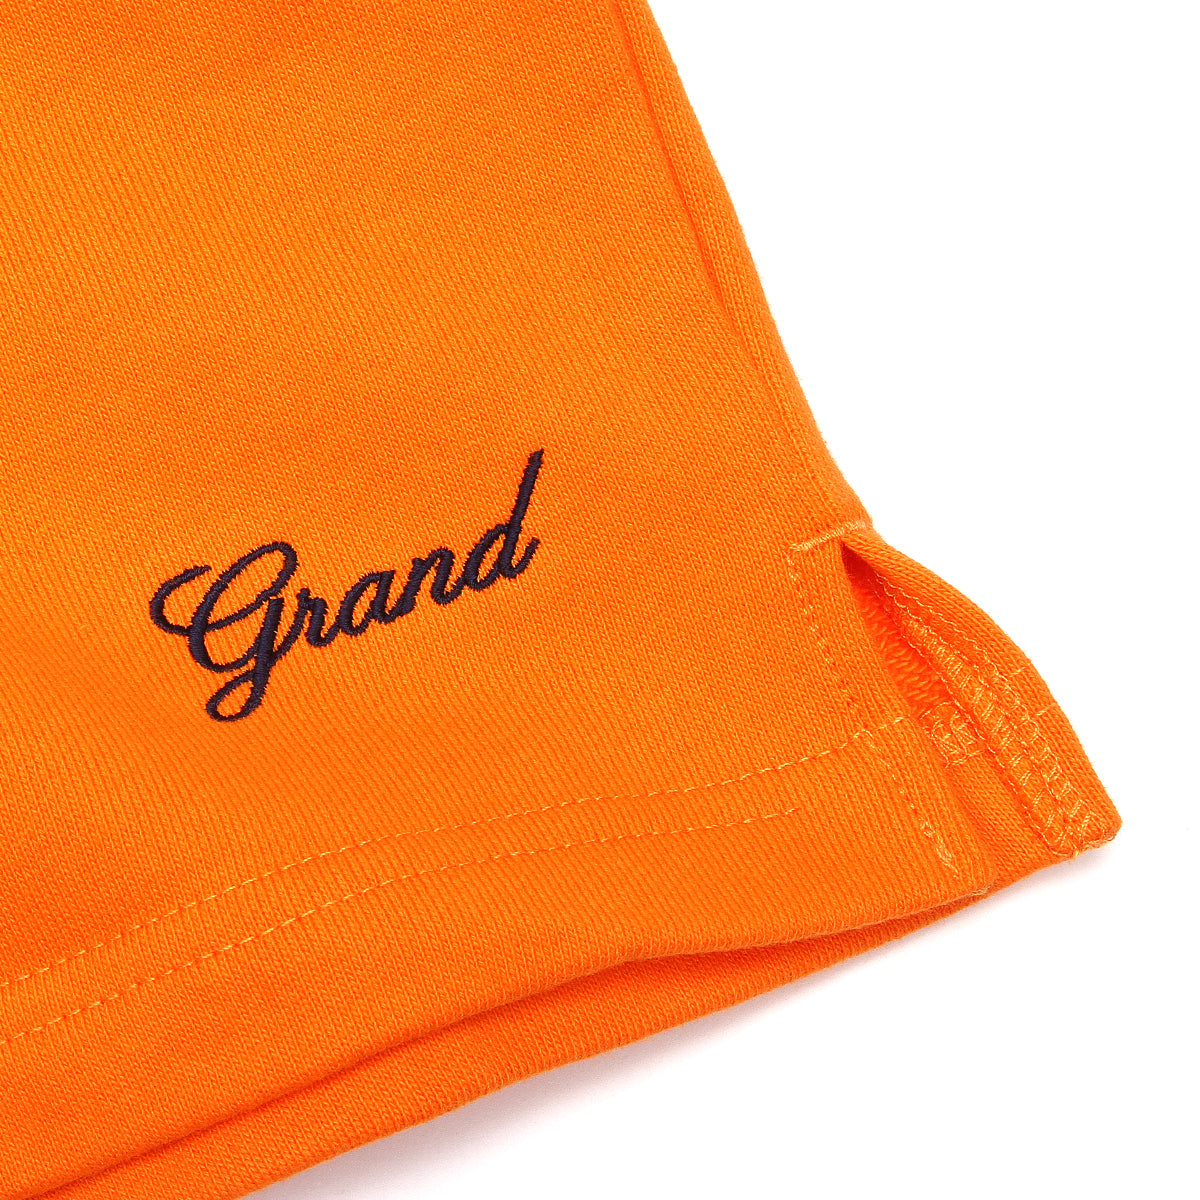 Premier x Grand Fleece Short Navy / Orange